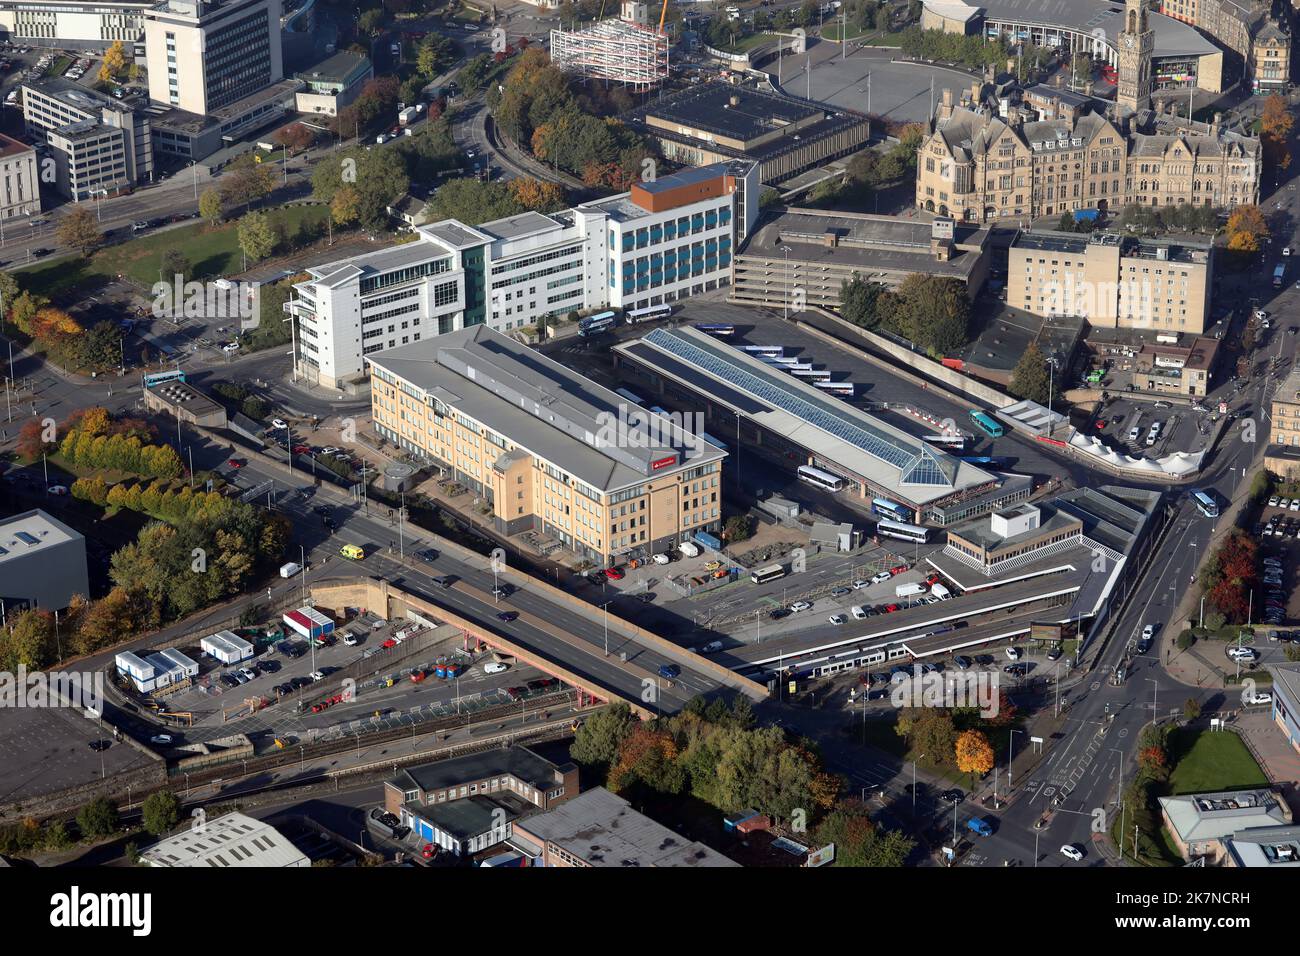 Luftaufnahme des Bradford Interchange & Santander Regional Office. Der Bahnhof, der Busbahnhof und das Büro von Santander befinden sich hier im Stadtzentrum. Stockfoto